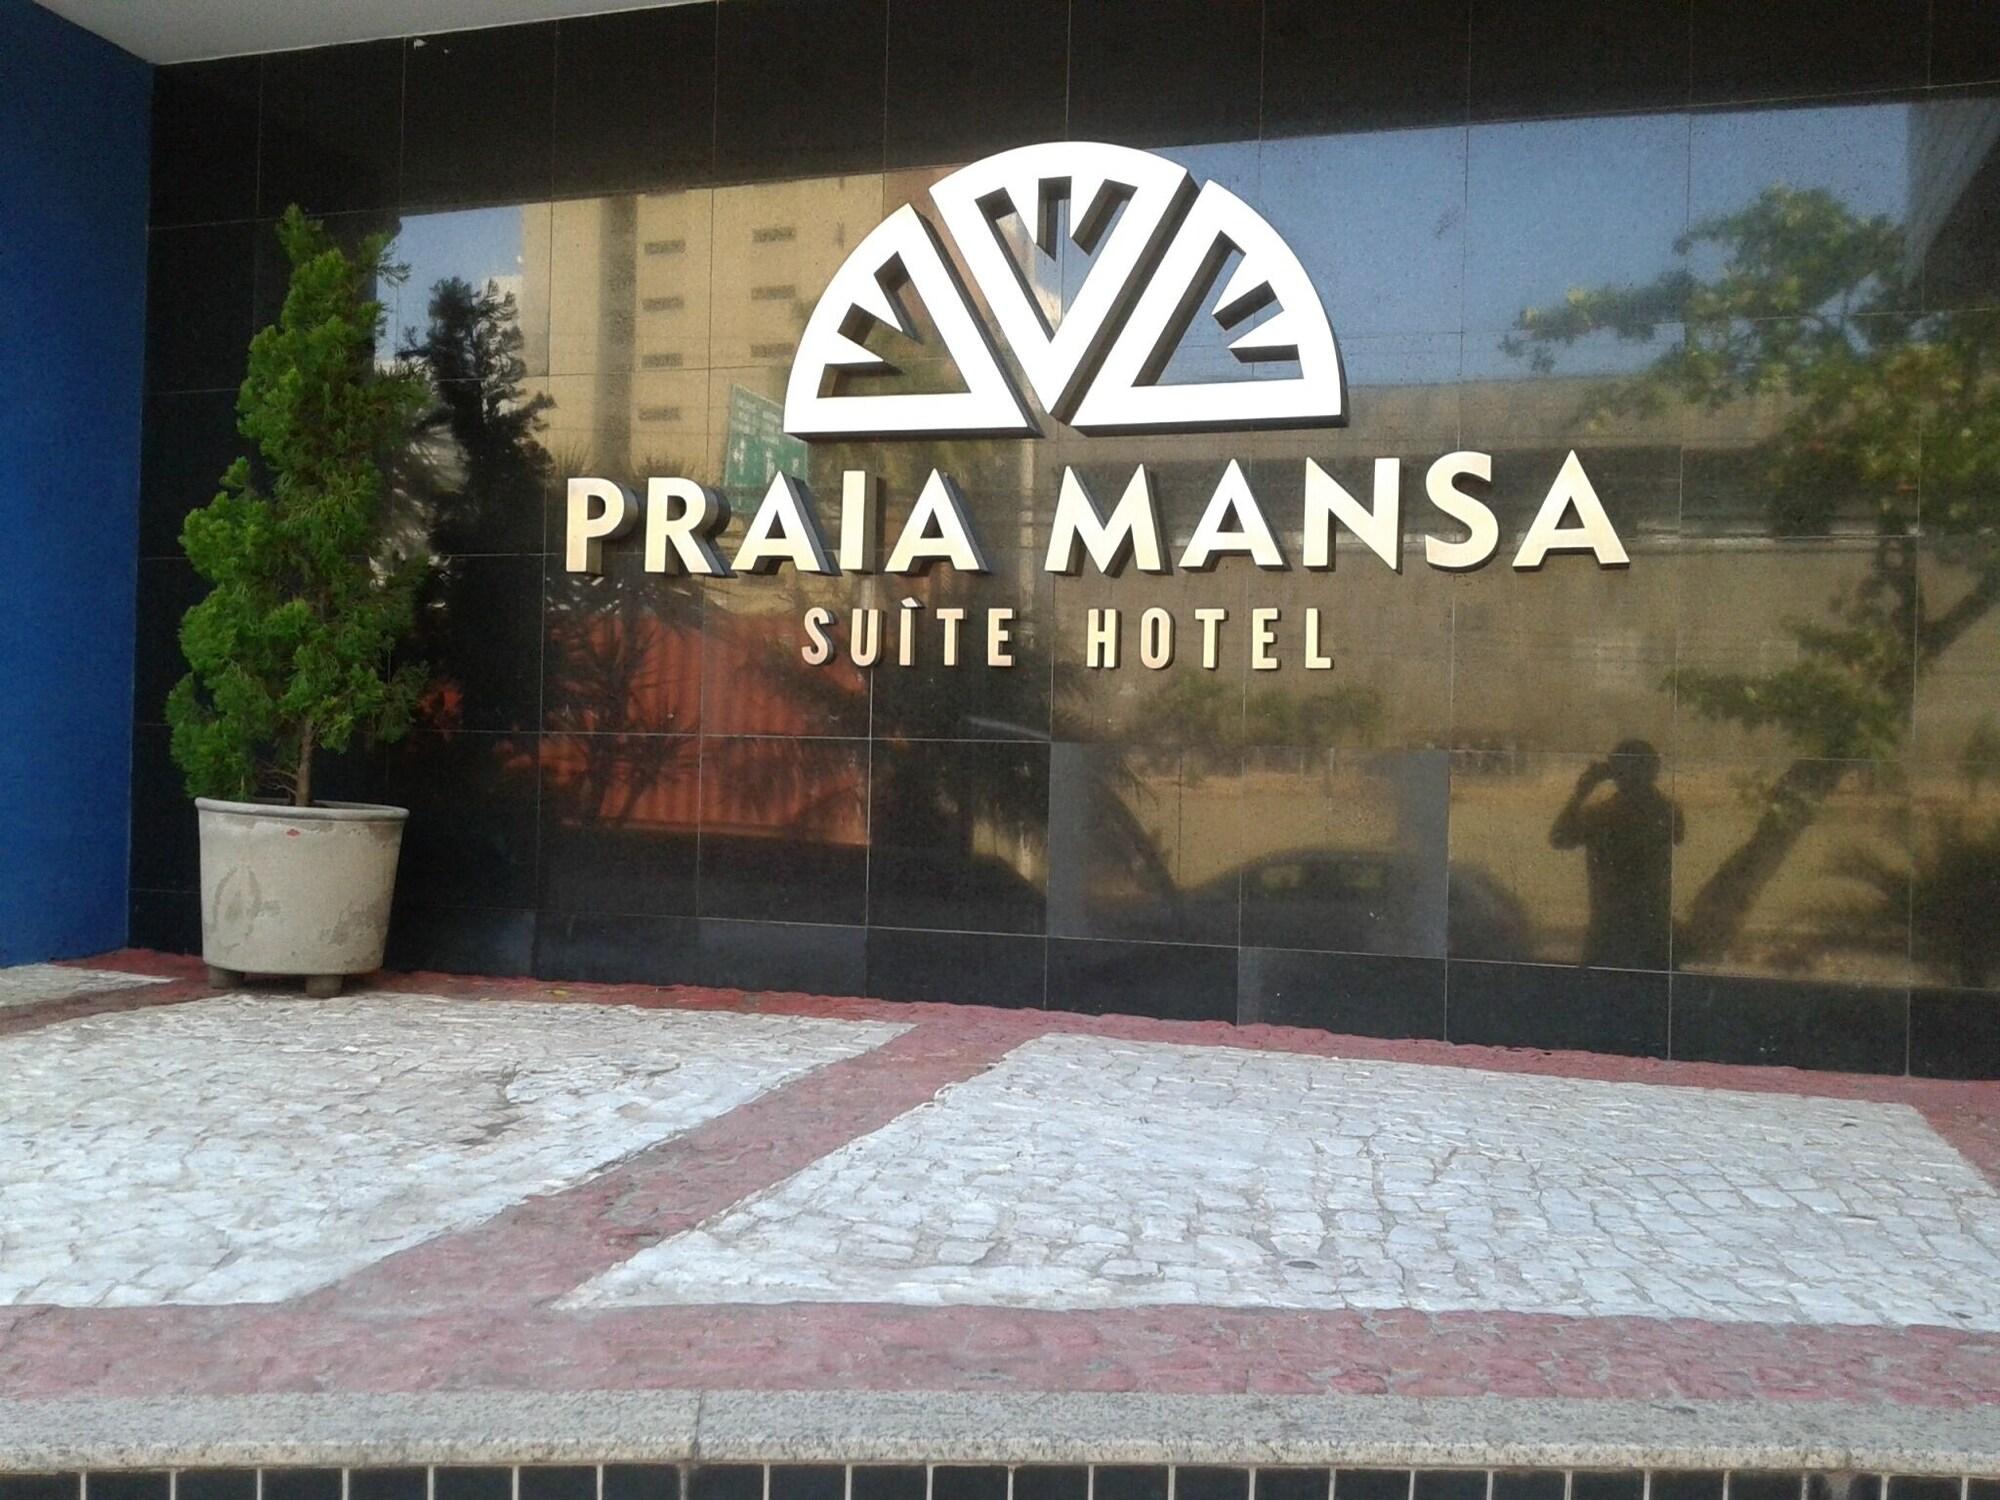 Miscellaneous Praia Mansa Suite Hotel Particular